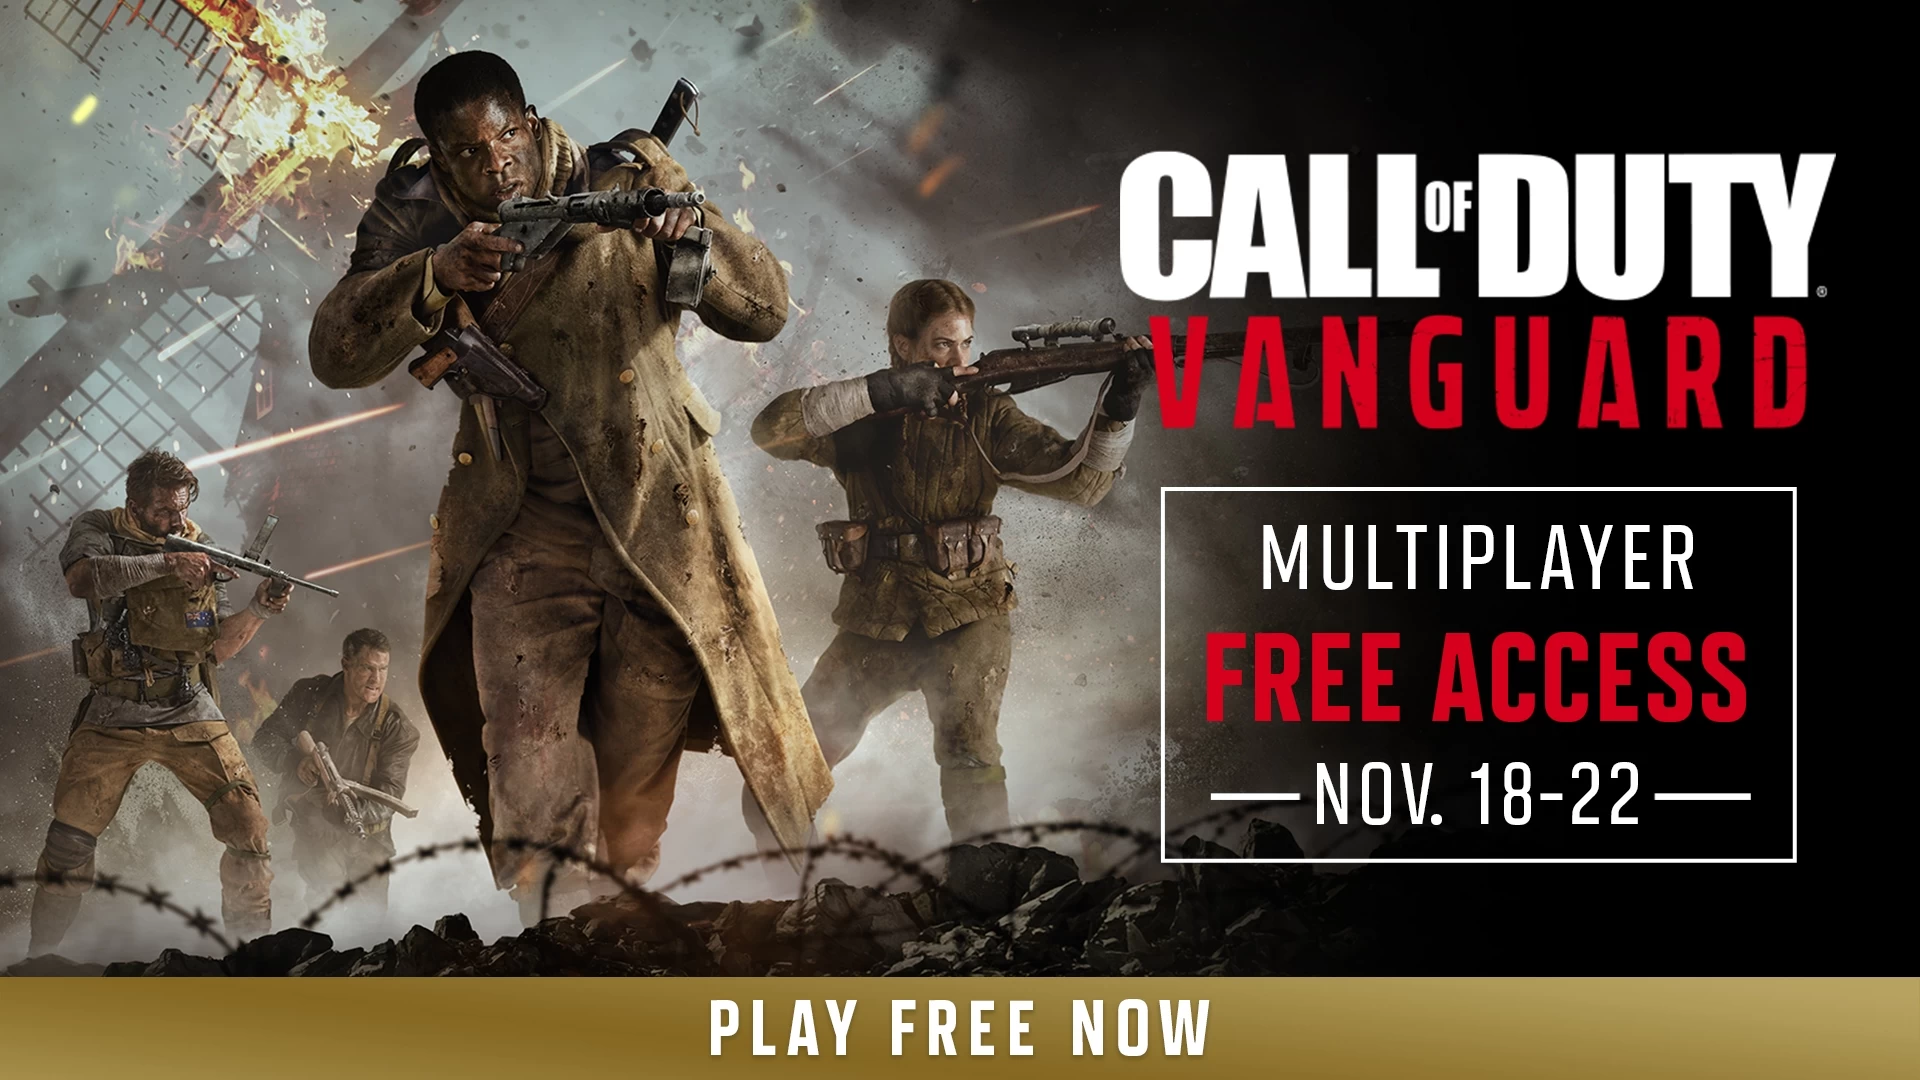 Усі охочі зможуть безкоштовно пограти у Call of Duty: Vanguard до 22 листопада